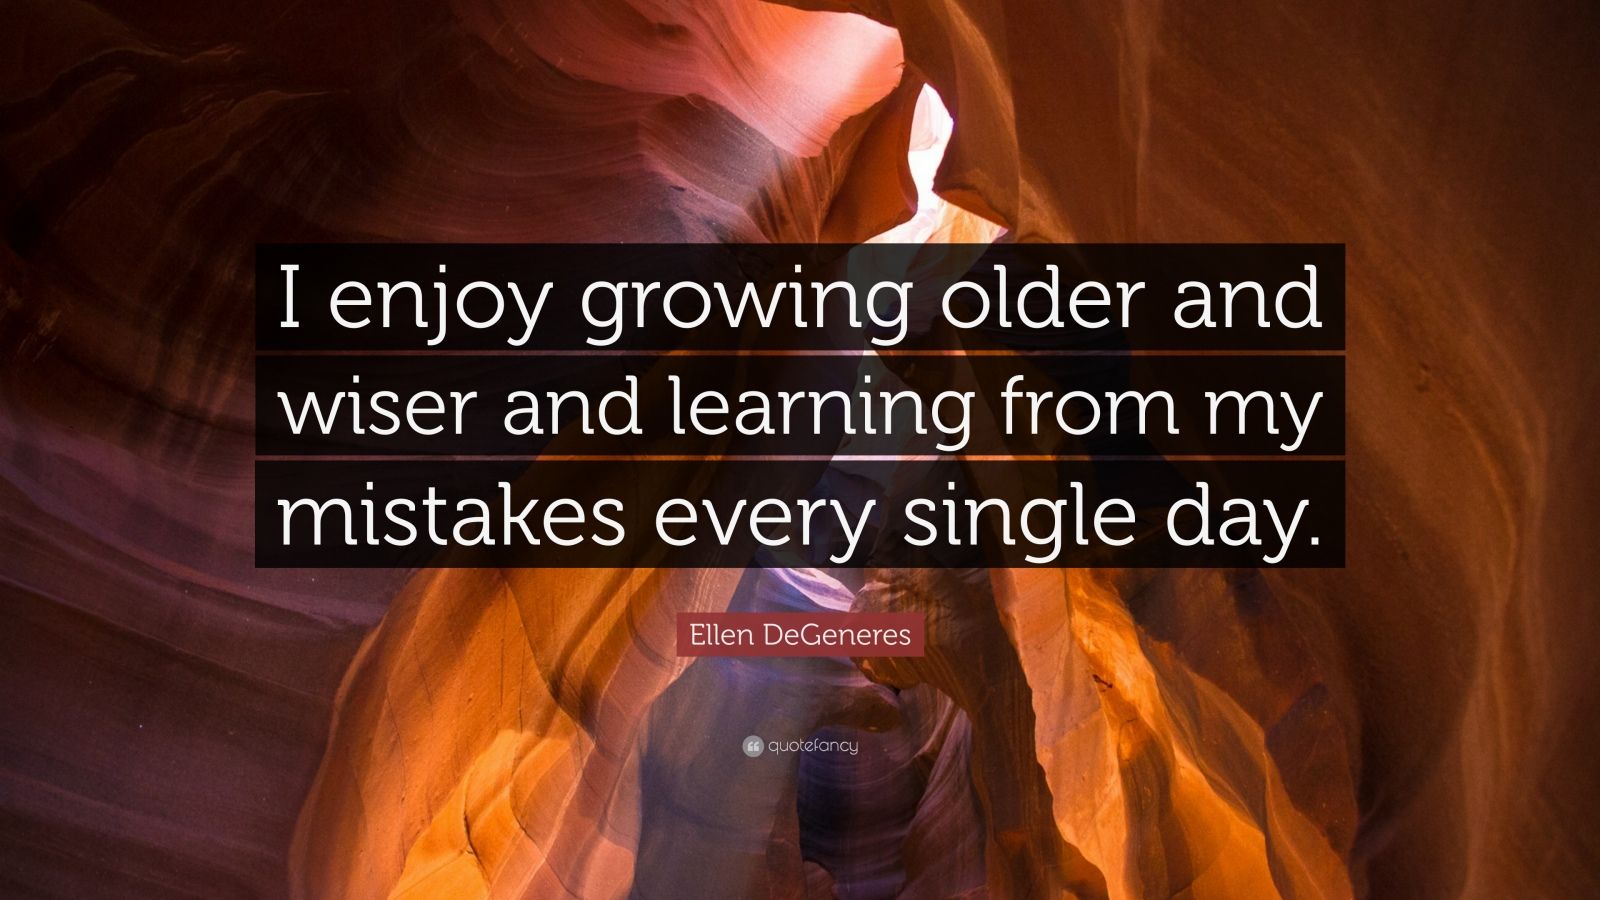 Ellen DeGeneres Quote “I enjoy growing older and wiser